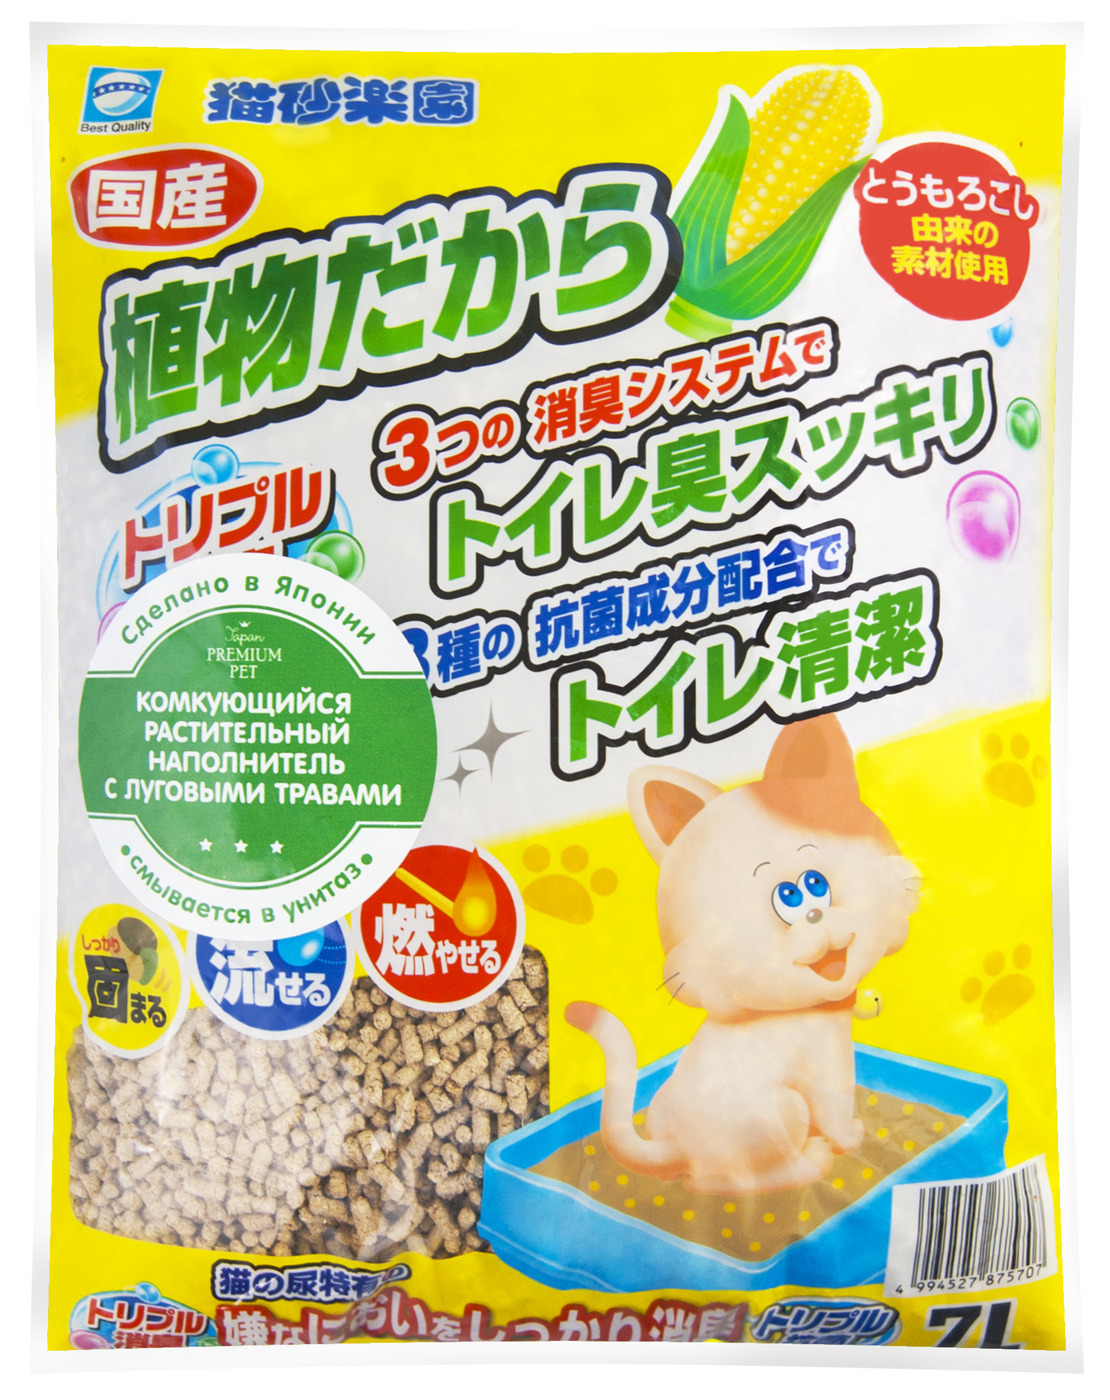 Japan Premium Pet наполнитель комкующийся кукурузный с луговыми травами, 7л. Japan Premium Pet наполнитель. Комкующийся наполнитель earthpet растительный с луговыми травами 7 л. Earth Pet наполнитель для кошачьего туалета.